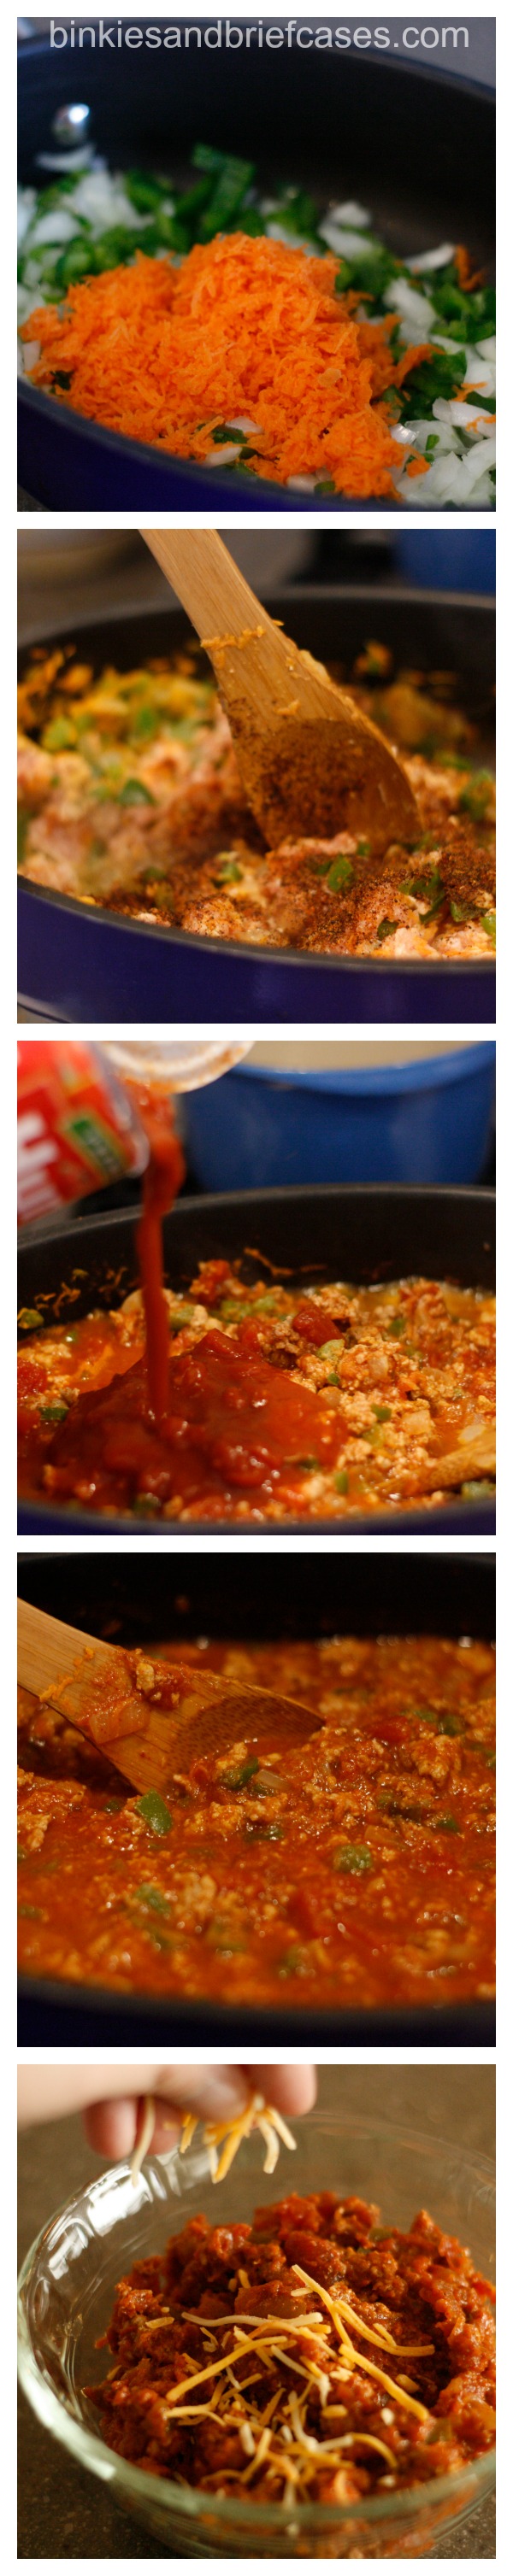 low calorie turkey chili recipe